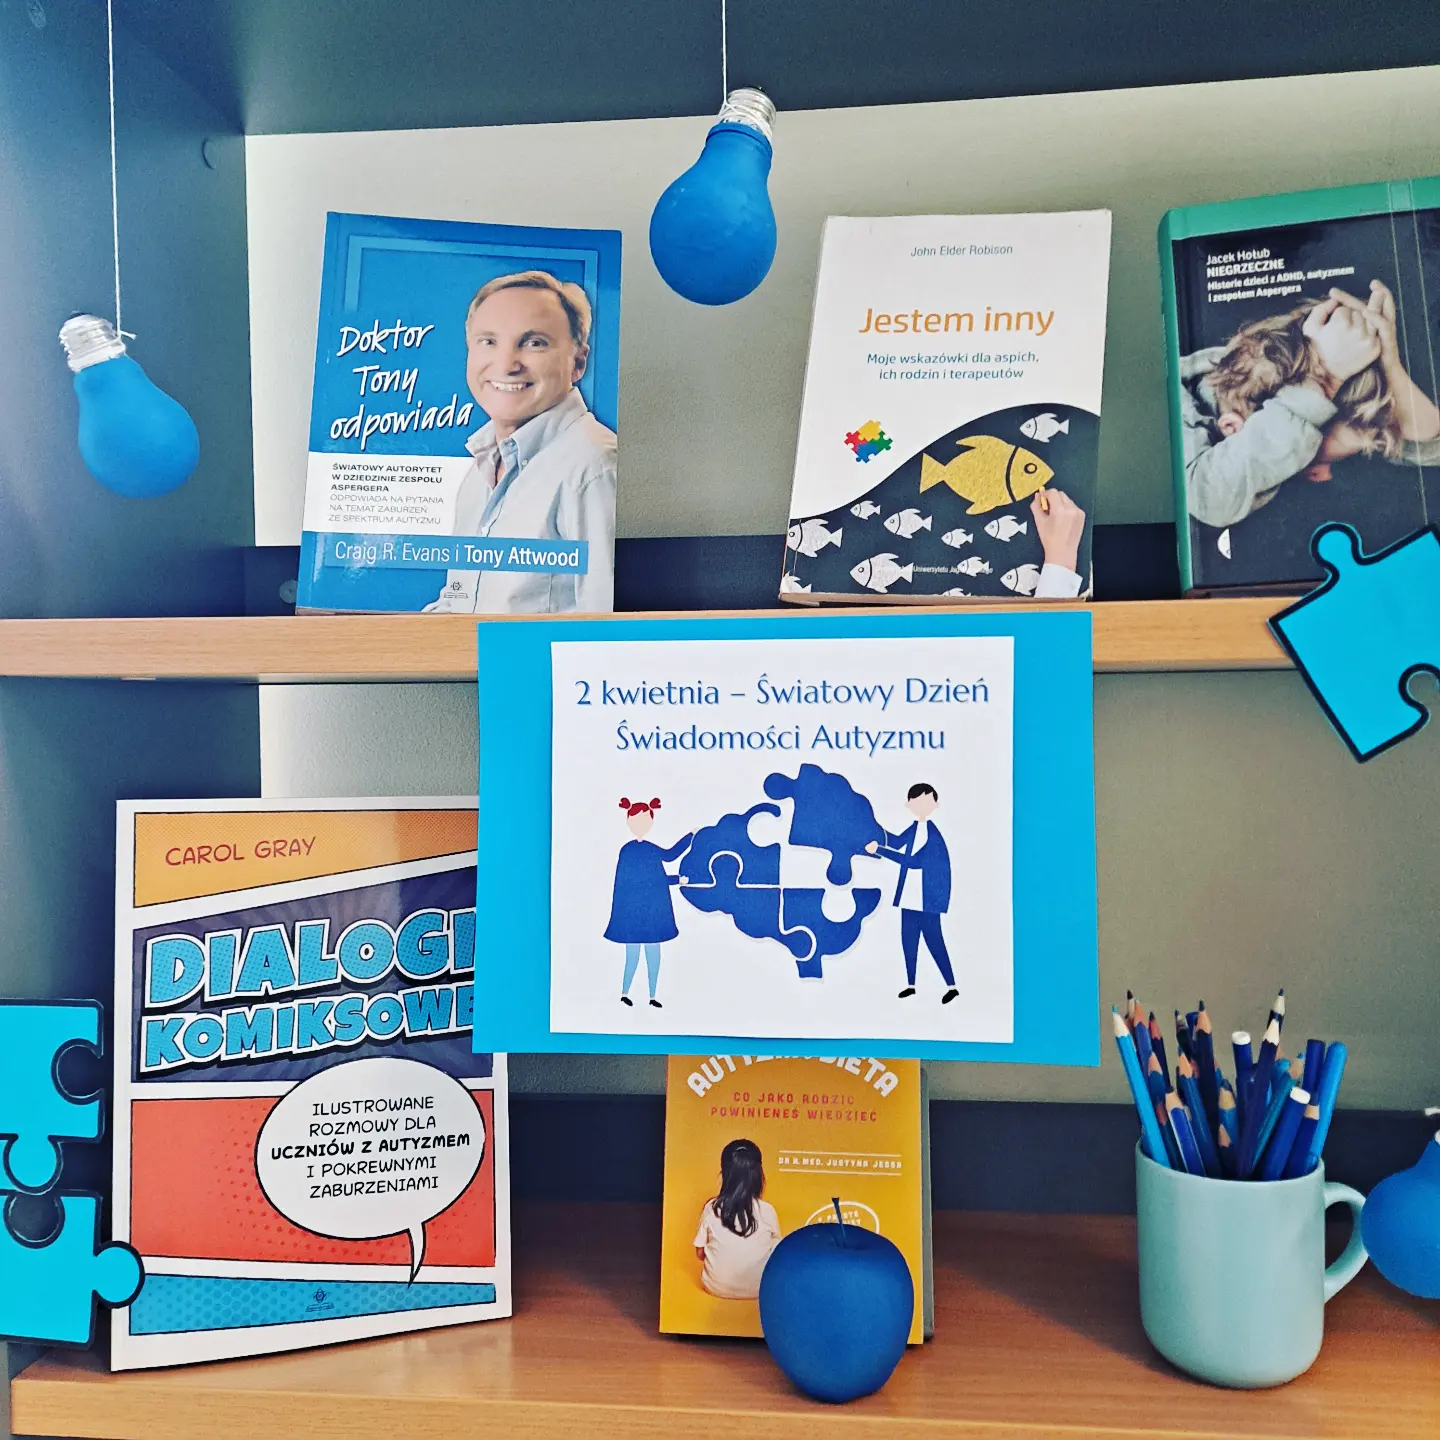 Zdjęcie przedstawia fragment regału z książkami na temat autyzmu. Widoczne elementy w kolorze niebieskim: żarówki, jabłko, kredki w niebieskim kubku.